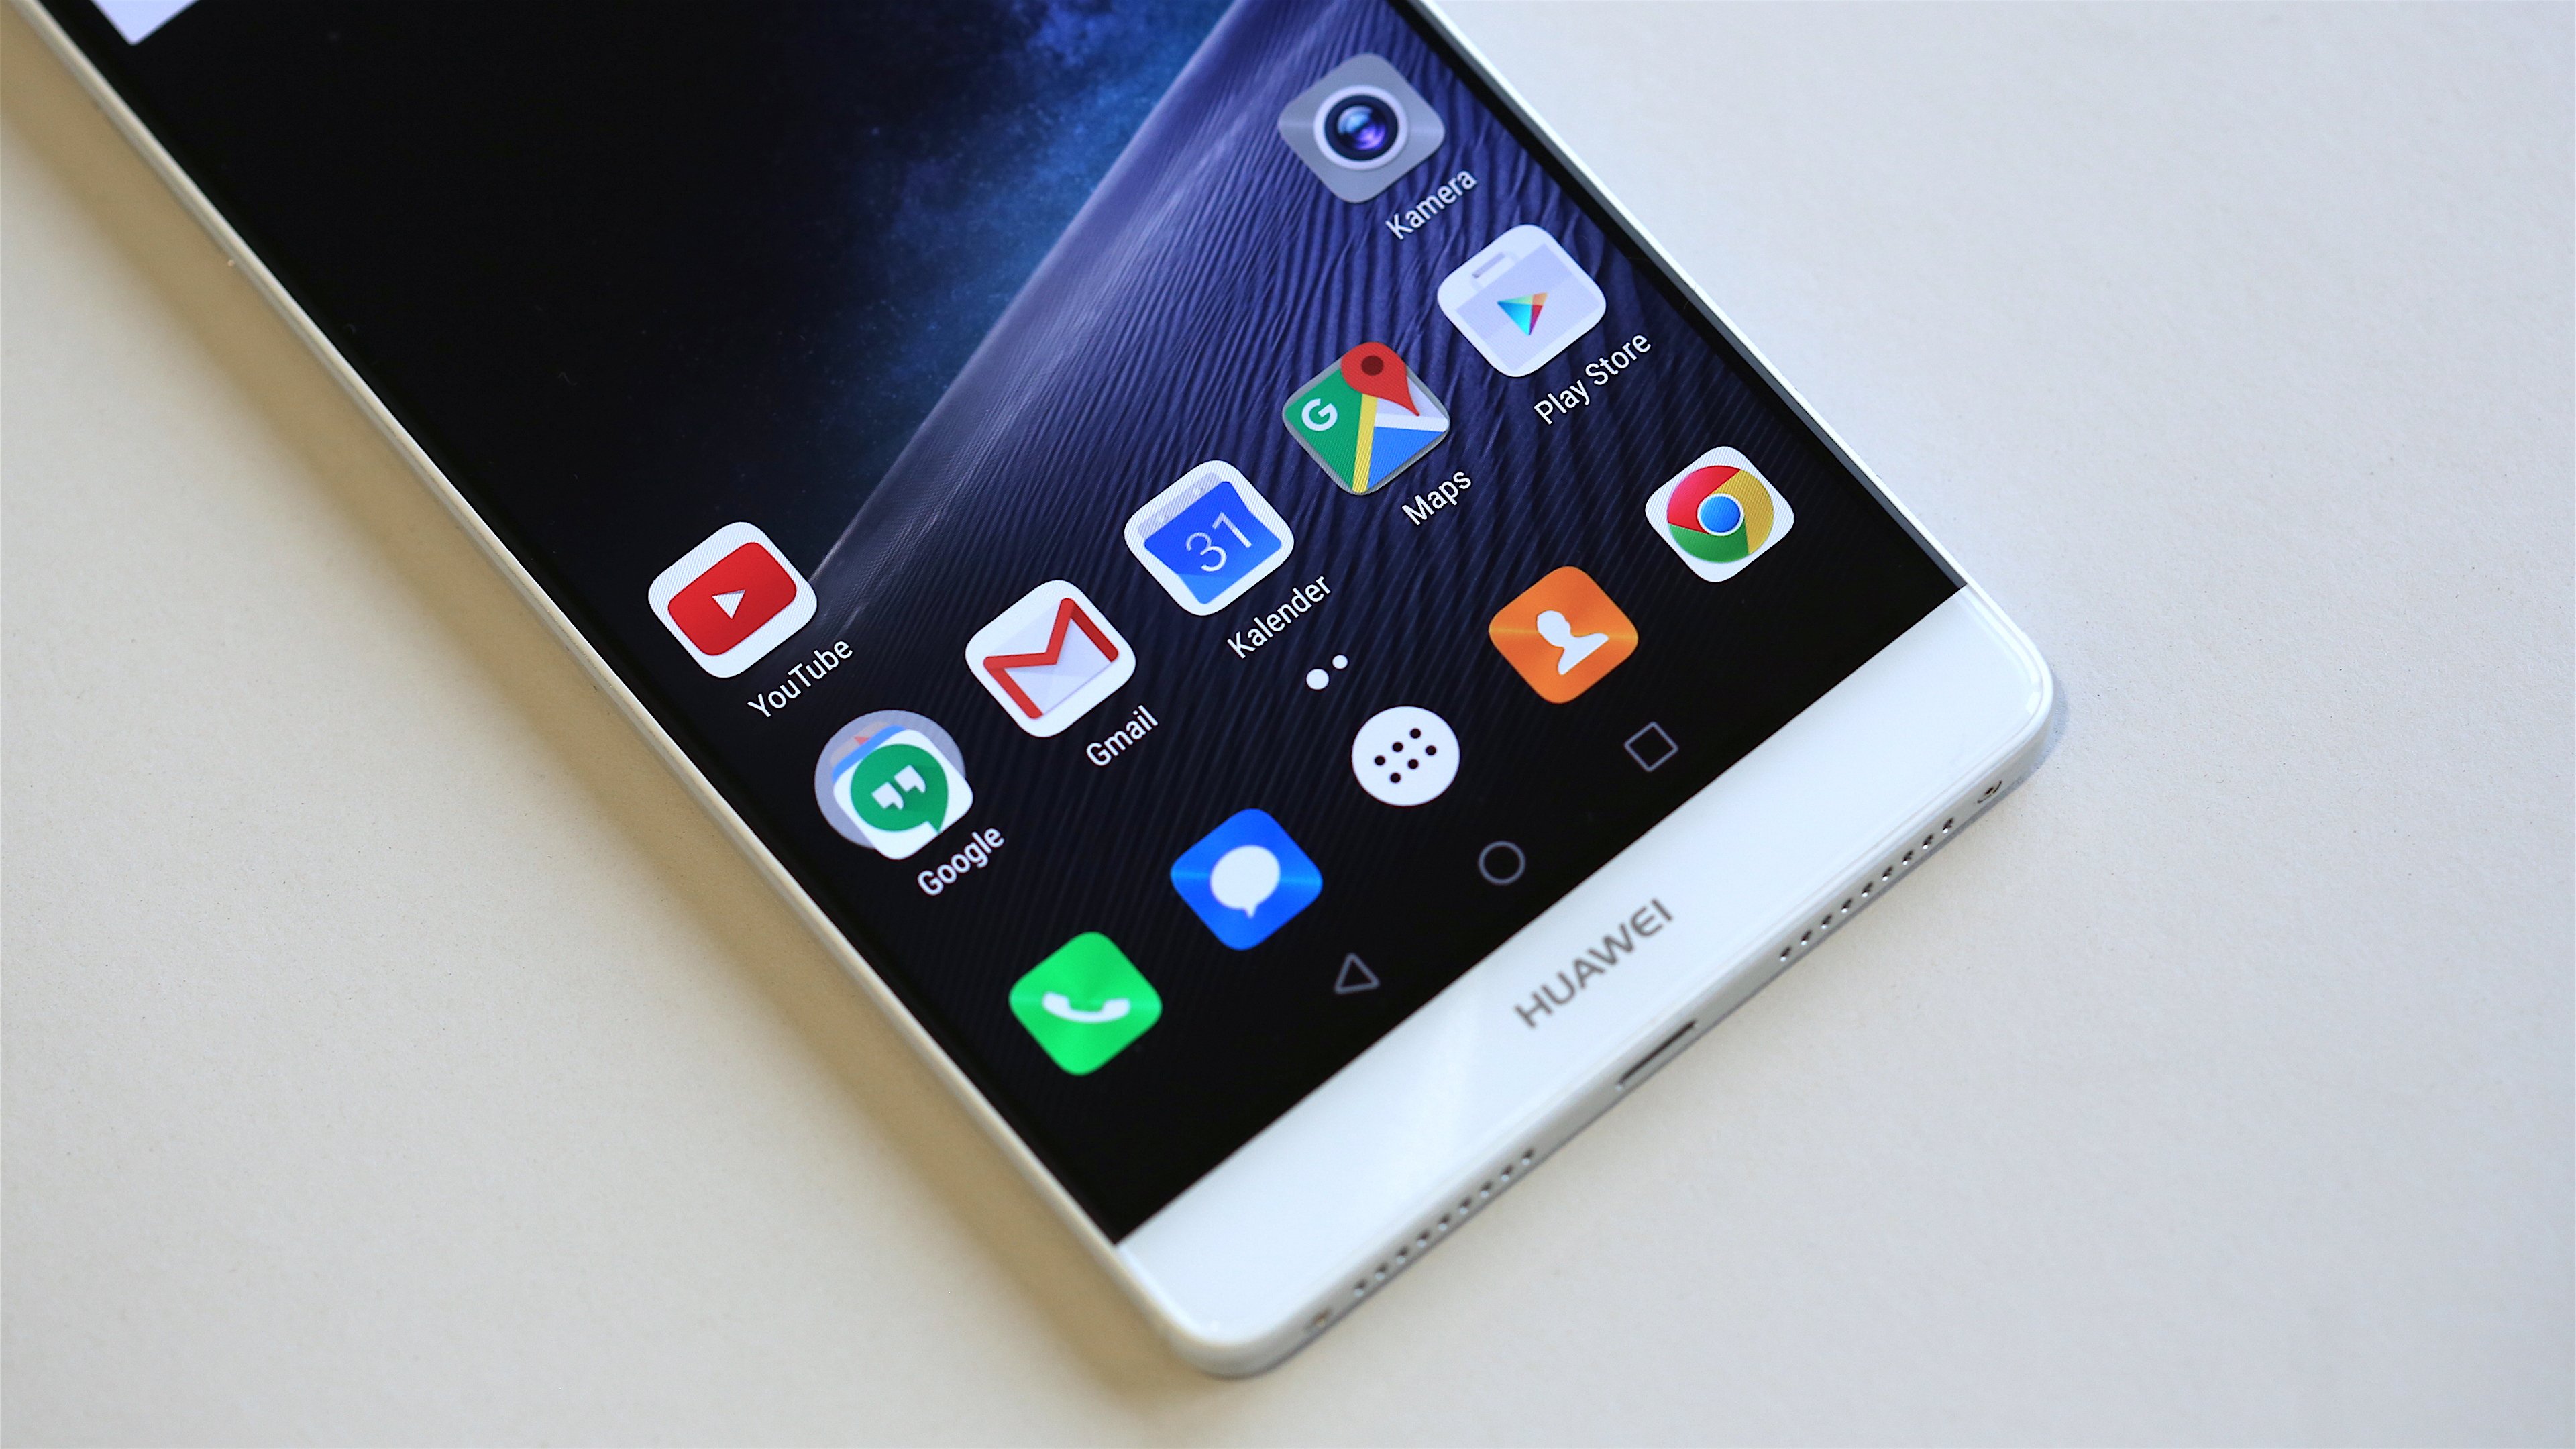 Afdaling gelijktijdig Spreek luid 7 reasons to buy the Huawei Mate 8 | NextPit